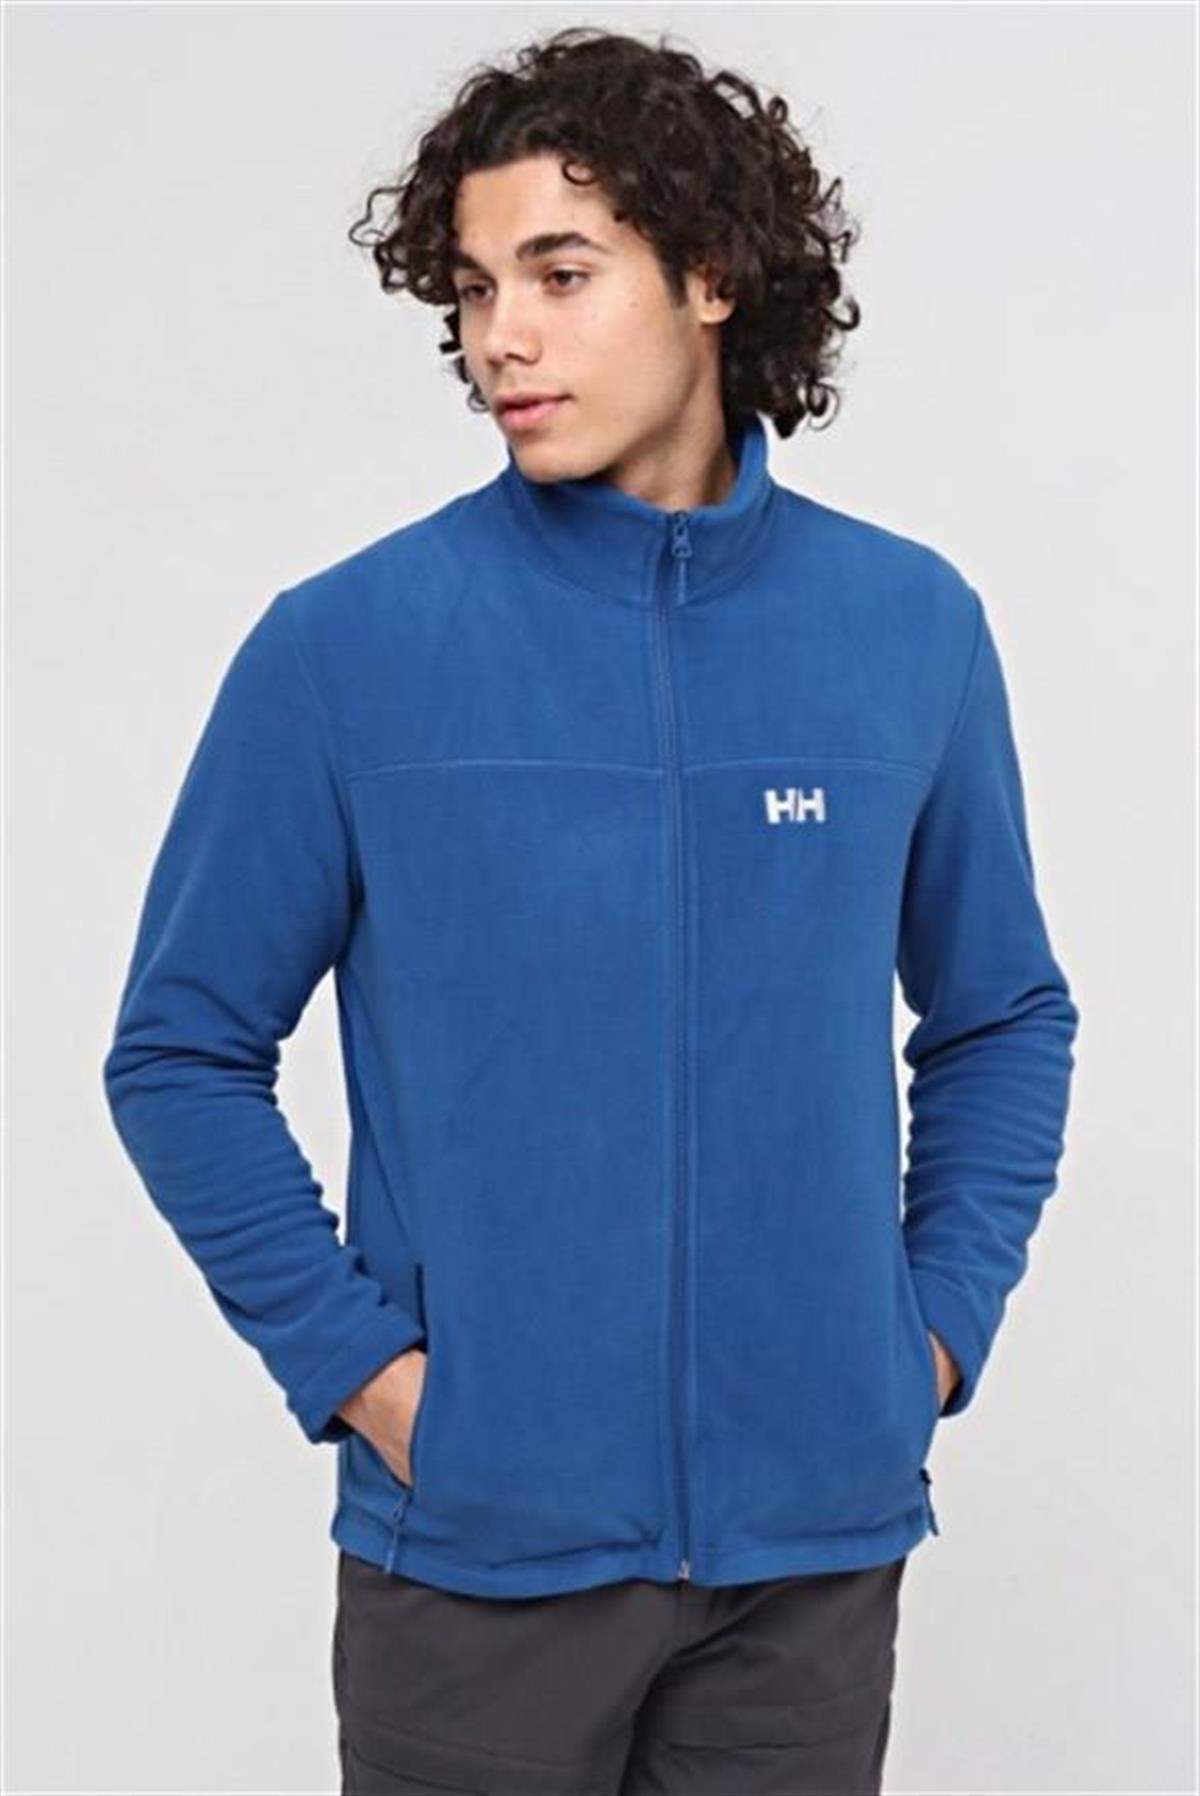 Erkek Polar Mont Sweatshirt Modelleri ve Fiyatları | Bee.com.tr